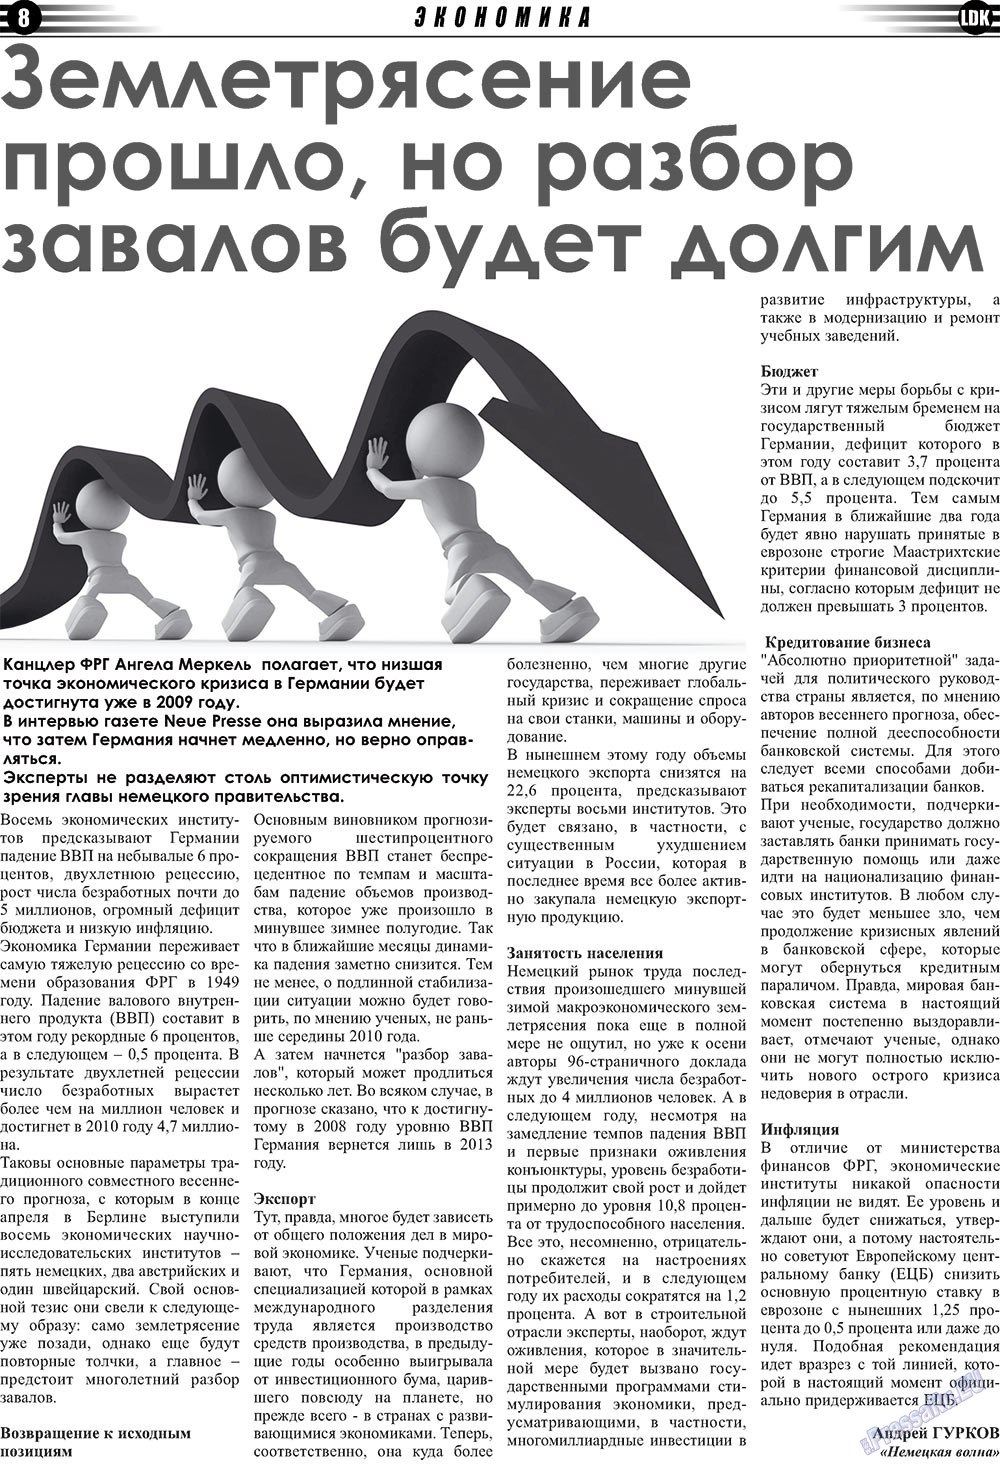 LDK auf Russisch (Zeitung). 2009 Jahr, Ausgabe 5, Seite 8